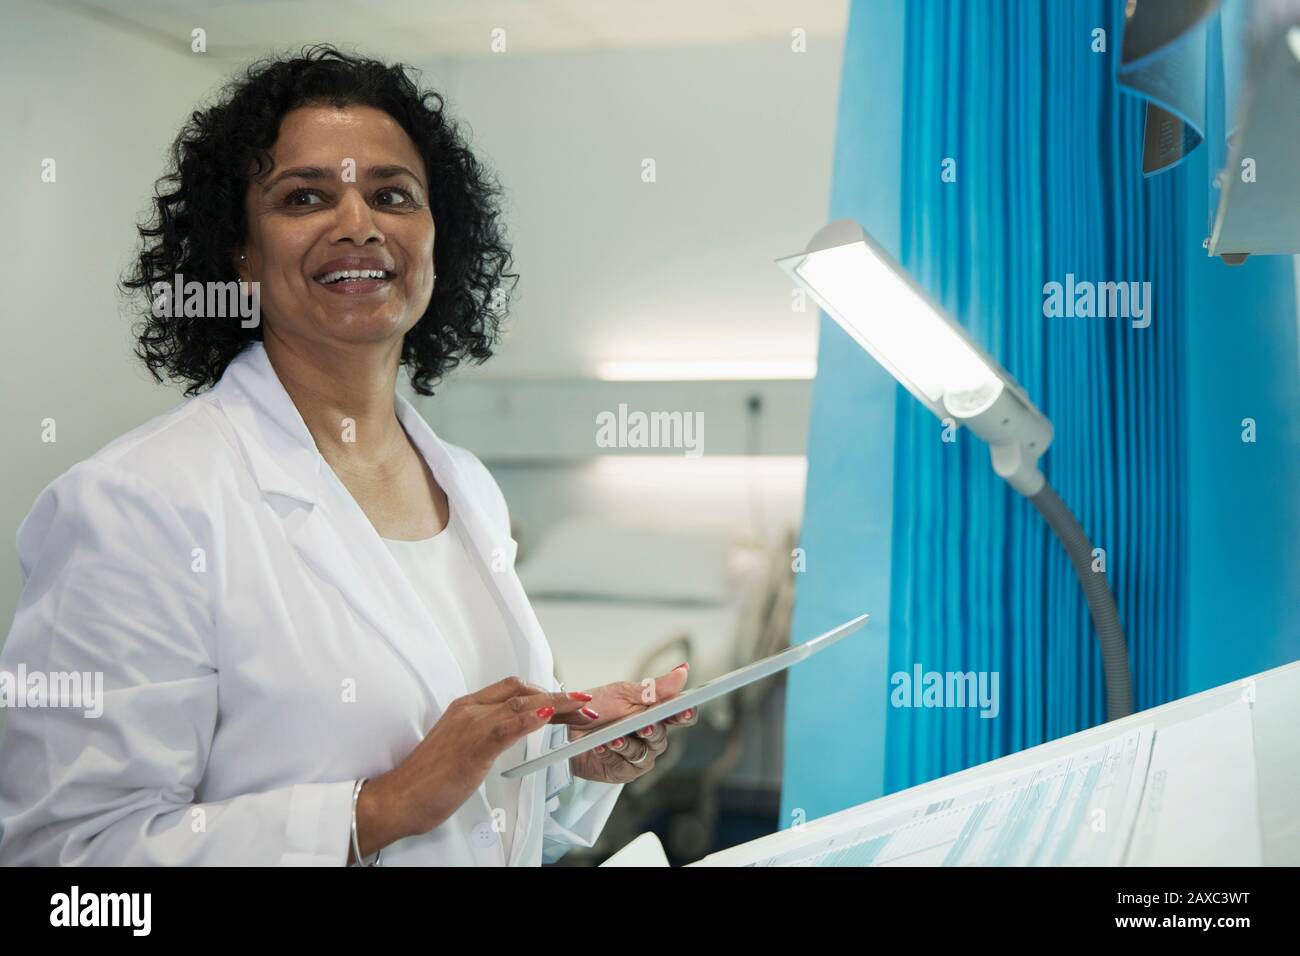 Médecin souriant utilisant une tablette numérique dans la salle d'hôpital Banque D'Images